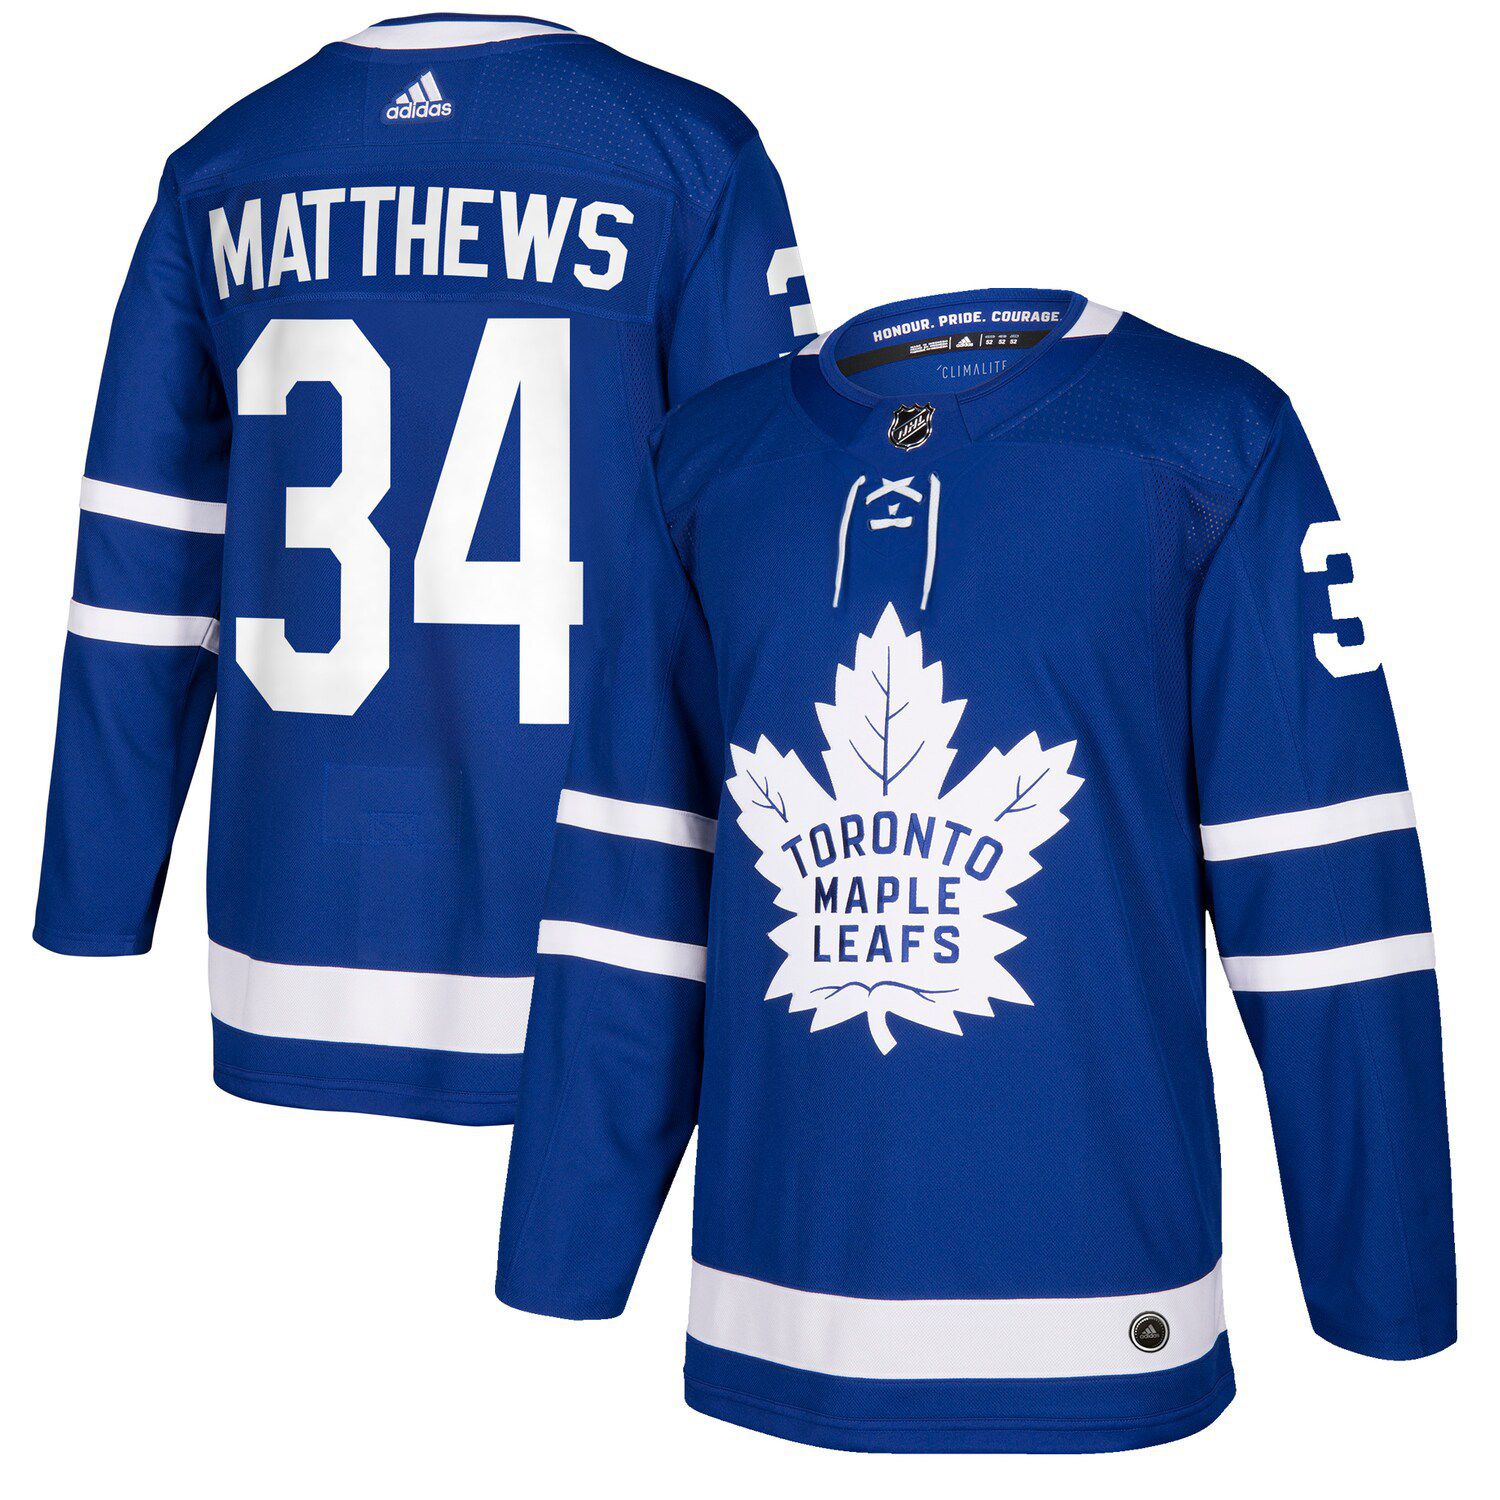 Men's Fanatics Branded Mats Sundin Blue Toronto Maple Leafs Breakaway Retired Player Jersey